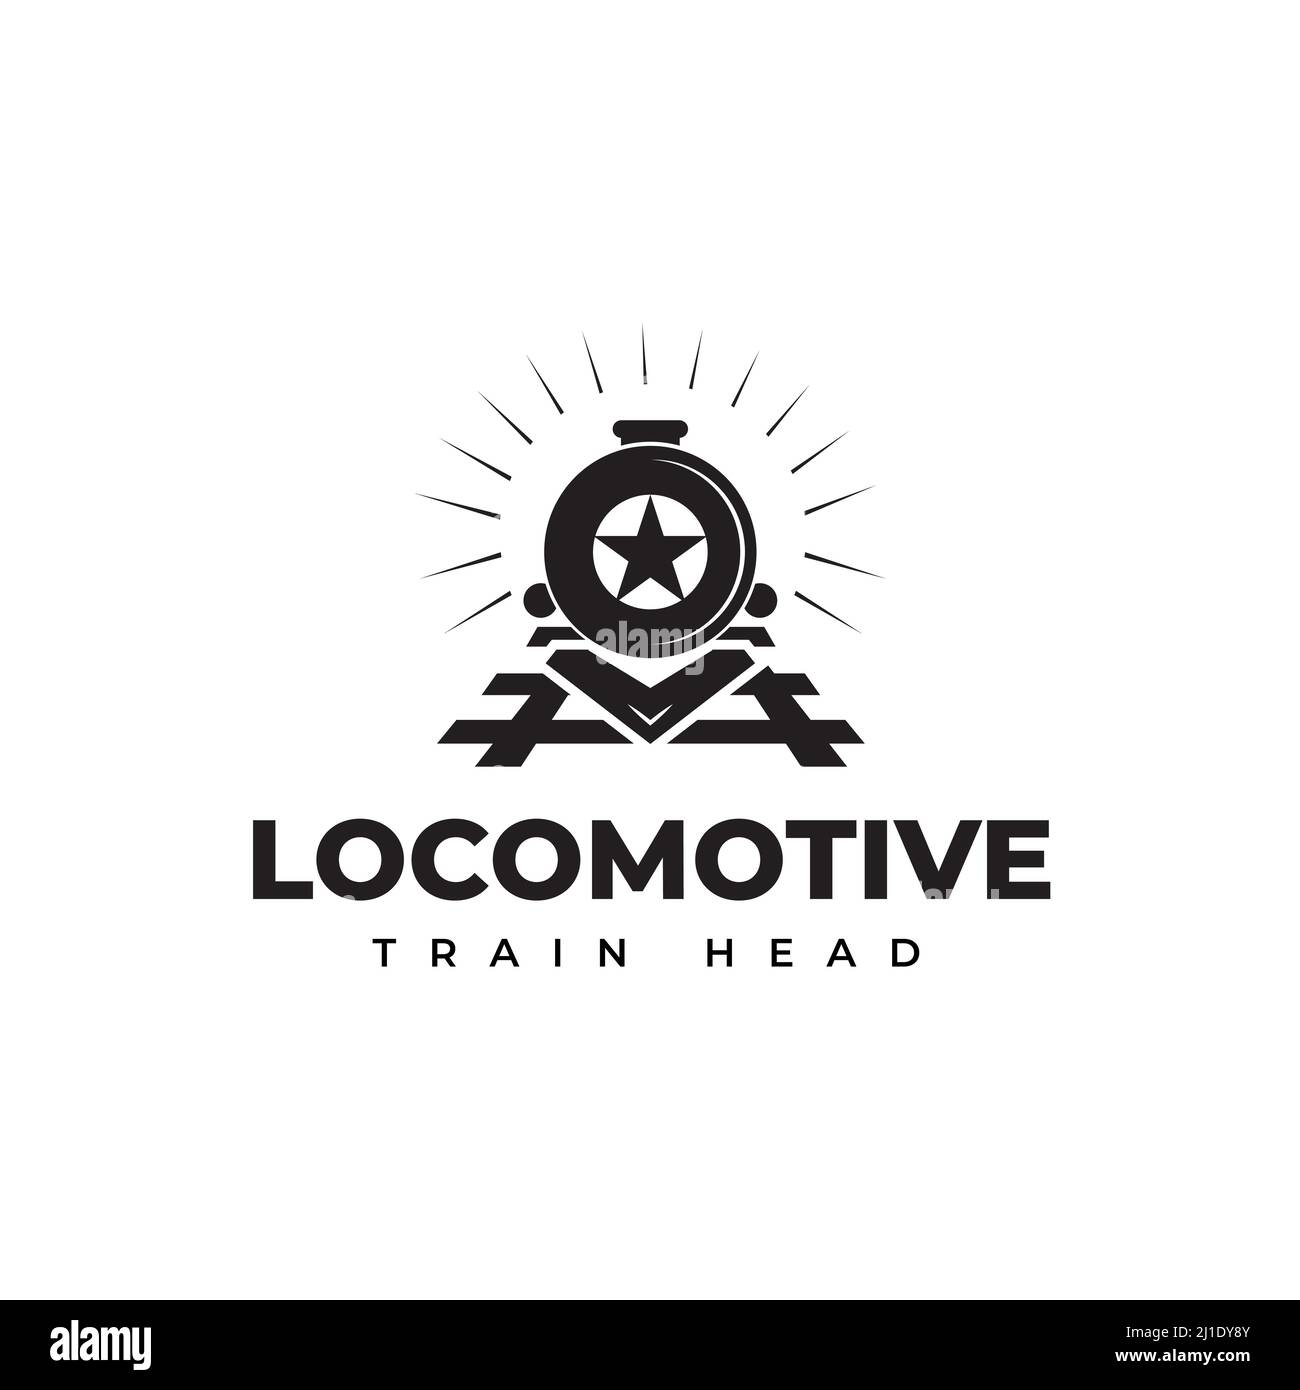 Logo de locomotive de chemin de fer, symbole lumineux et chemin de fer créatif, symbole d'icône, lettre O et étoile Illustration de Vecteur